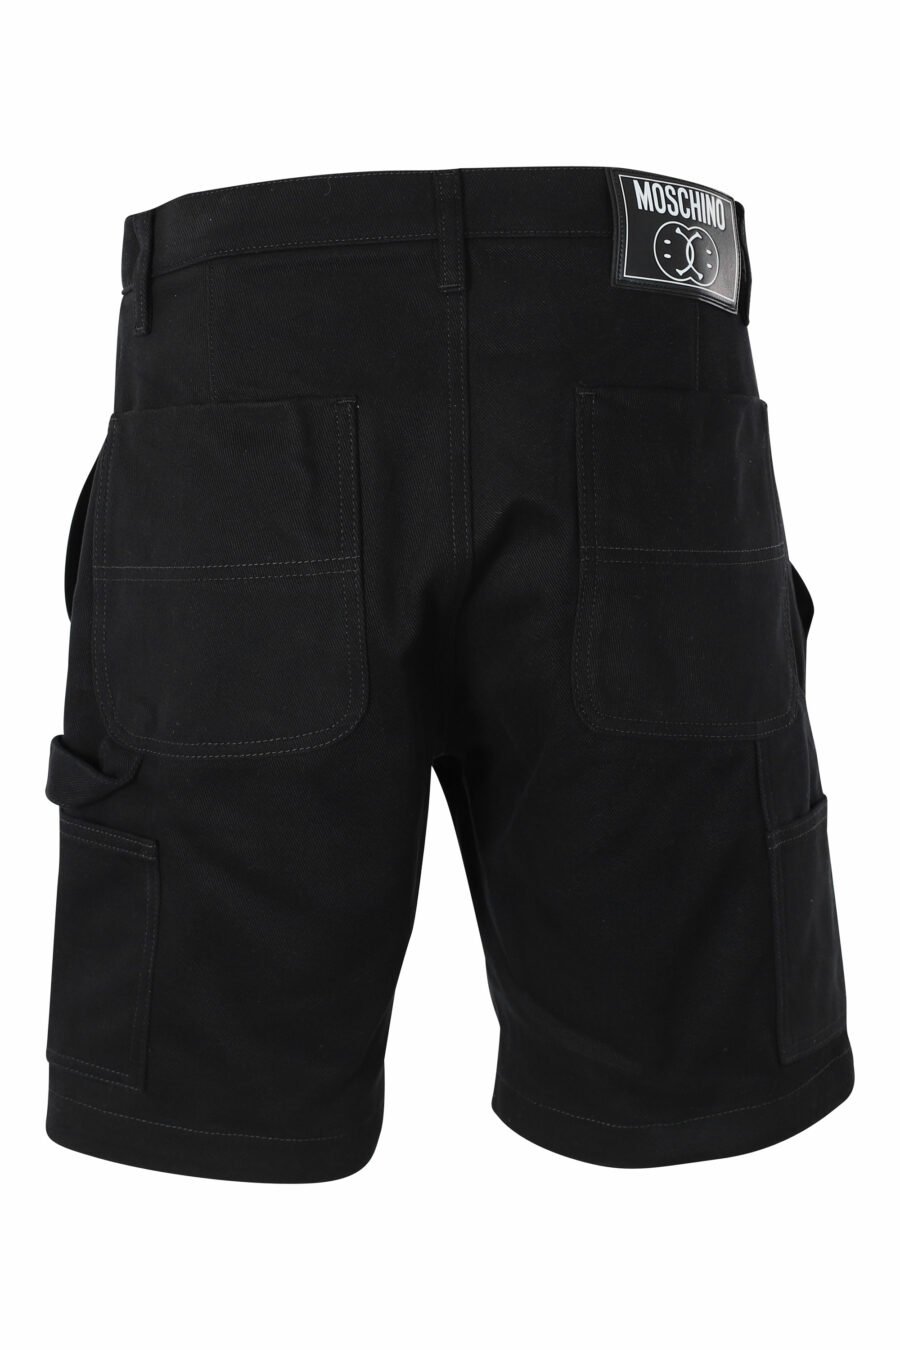 Pantalón vaquero corto negro con bolsillos laterales - IMG 9567